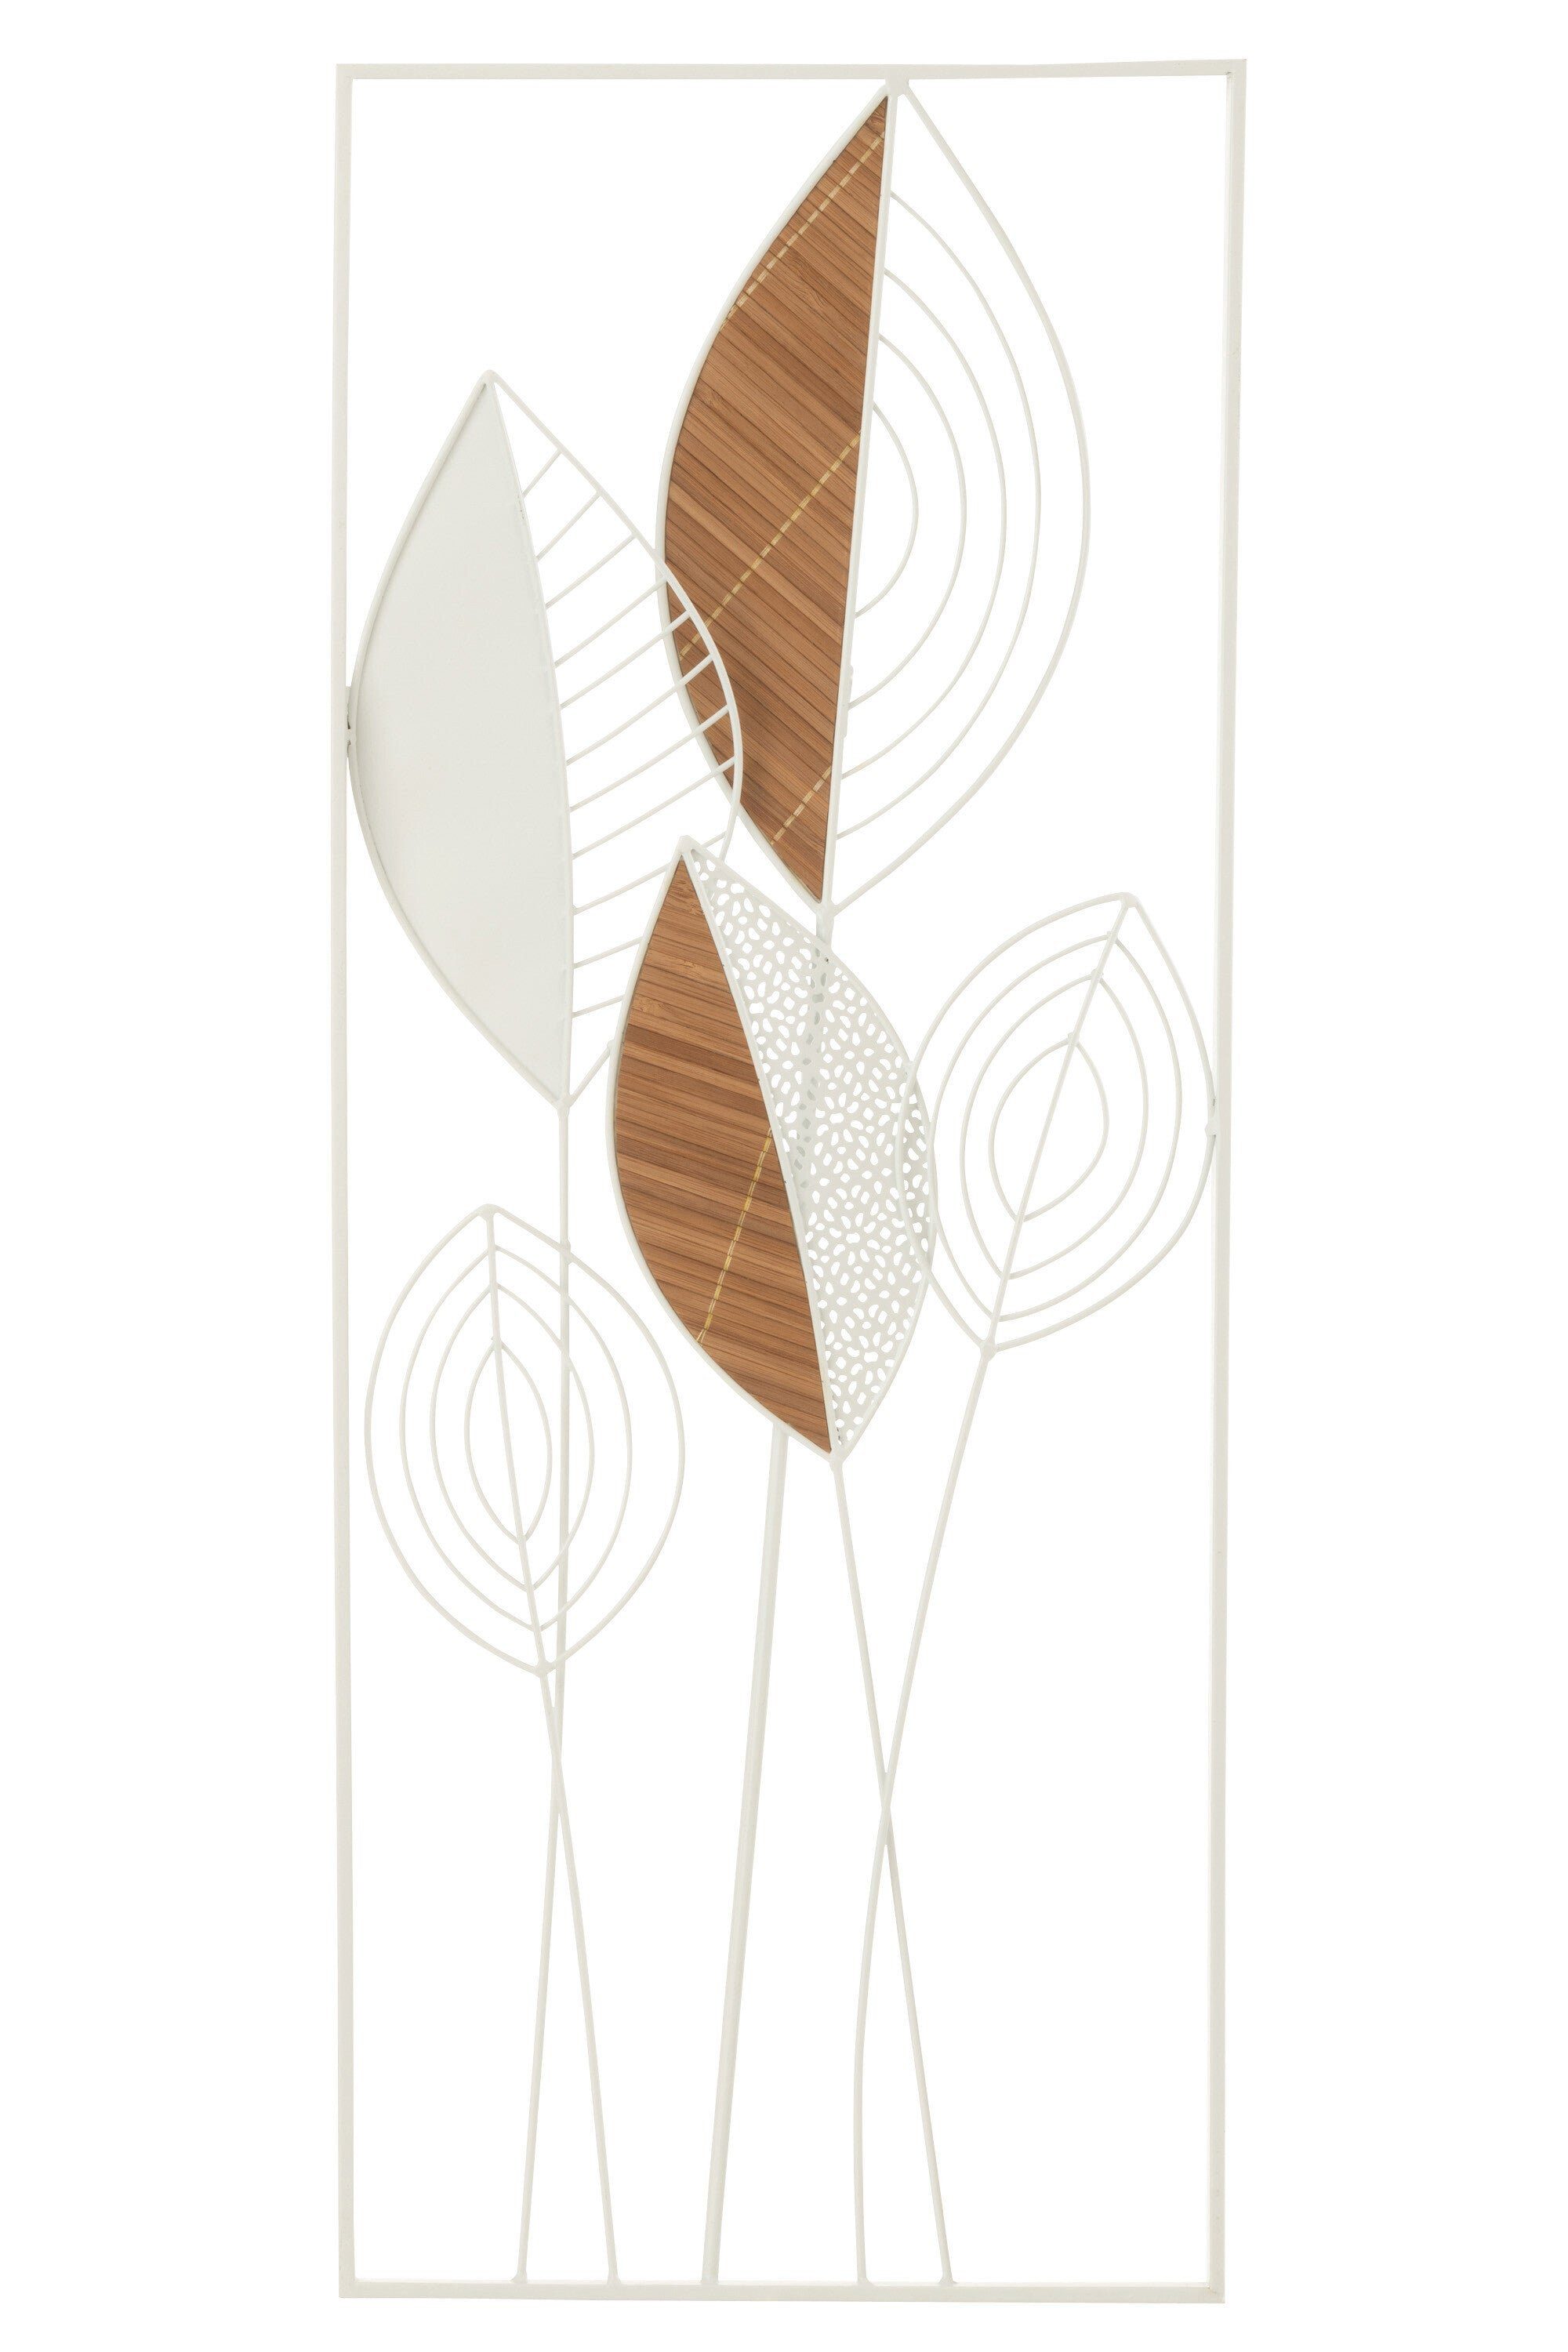 MF Dekoobjekt Edle Blätter Wanddeko aus Metall/Bambus in Weiß